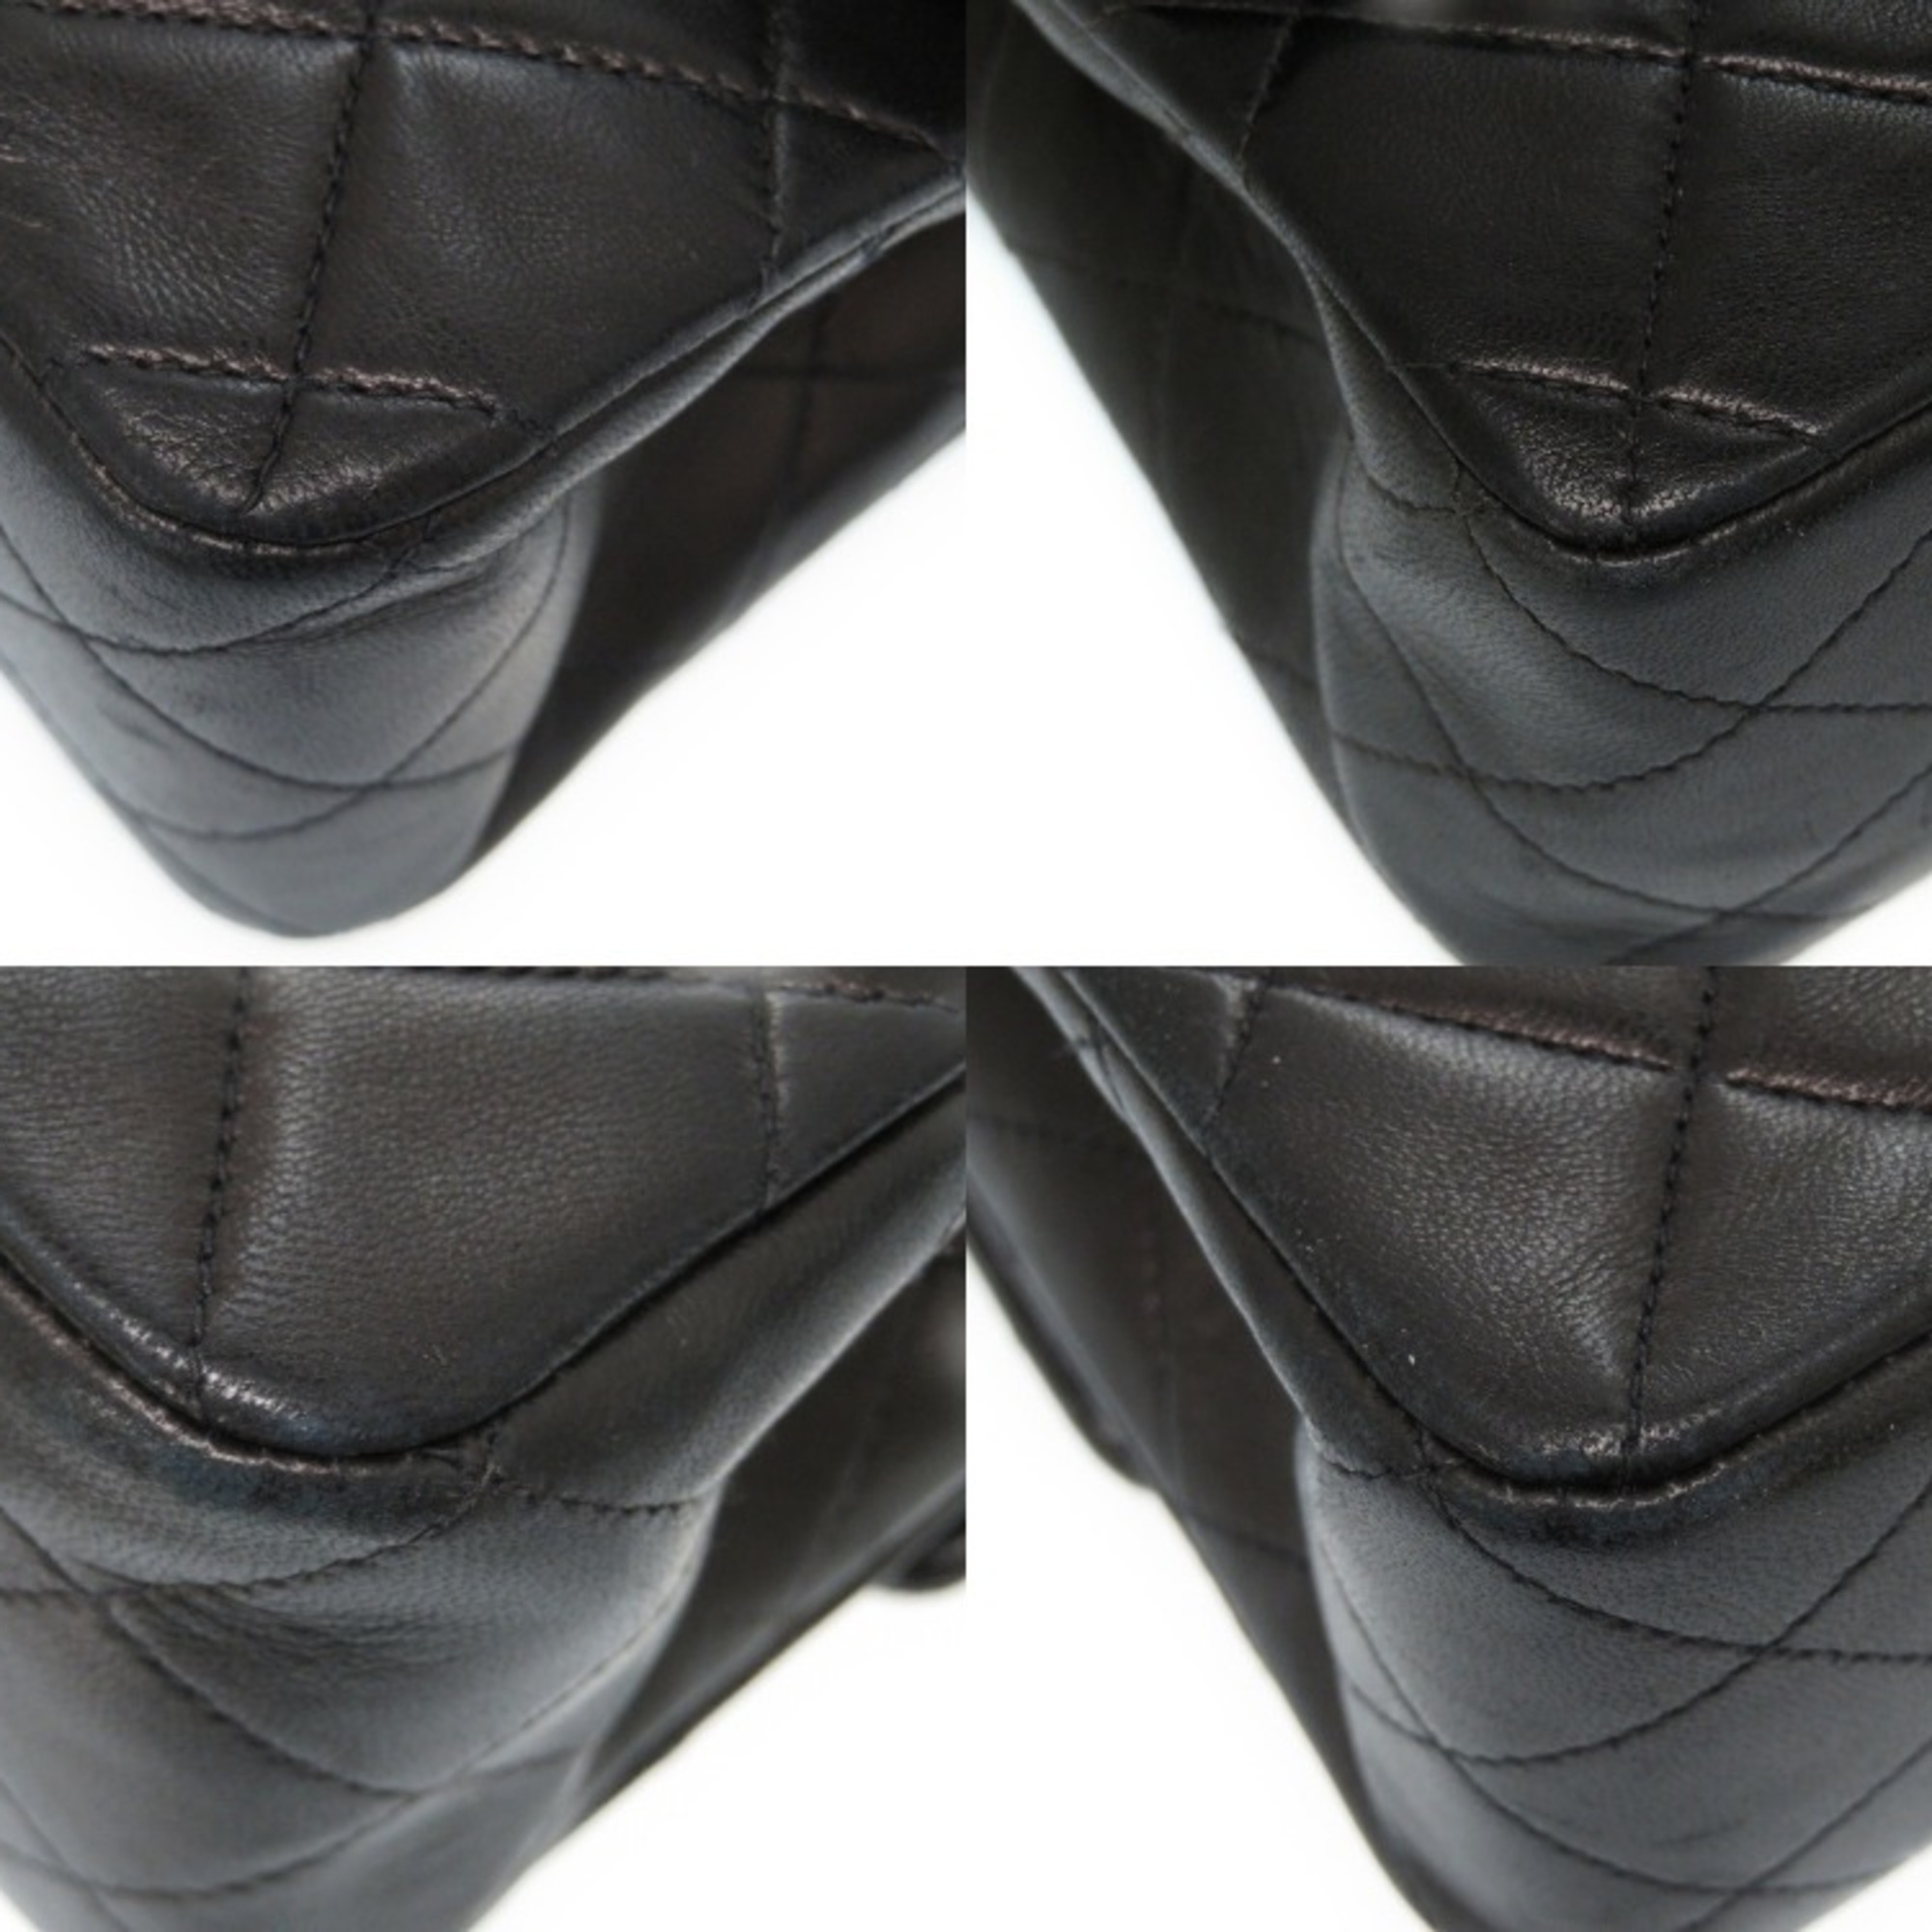 Chanel Matelasse Leather Shoulder Bag Black